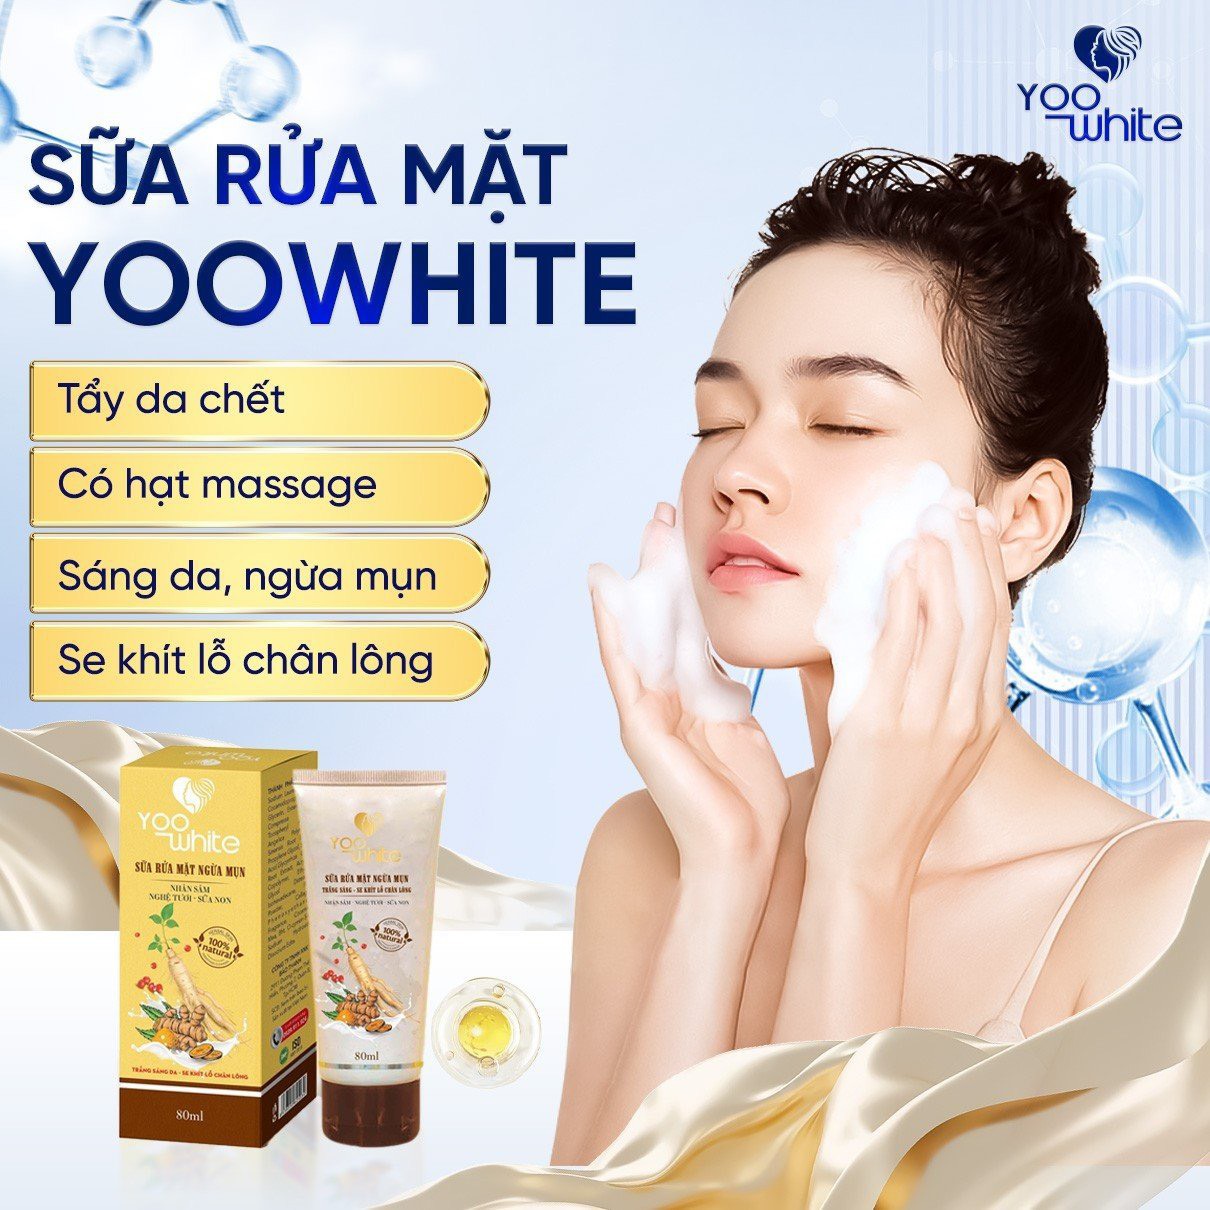 Sữa rữa mặt ngừa mụn Yoo White cứu tinh cho làn da khó chiều